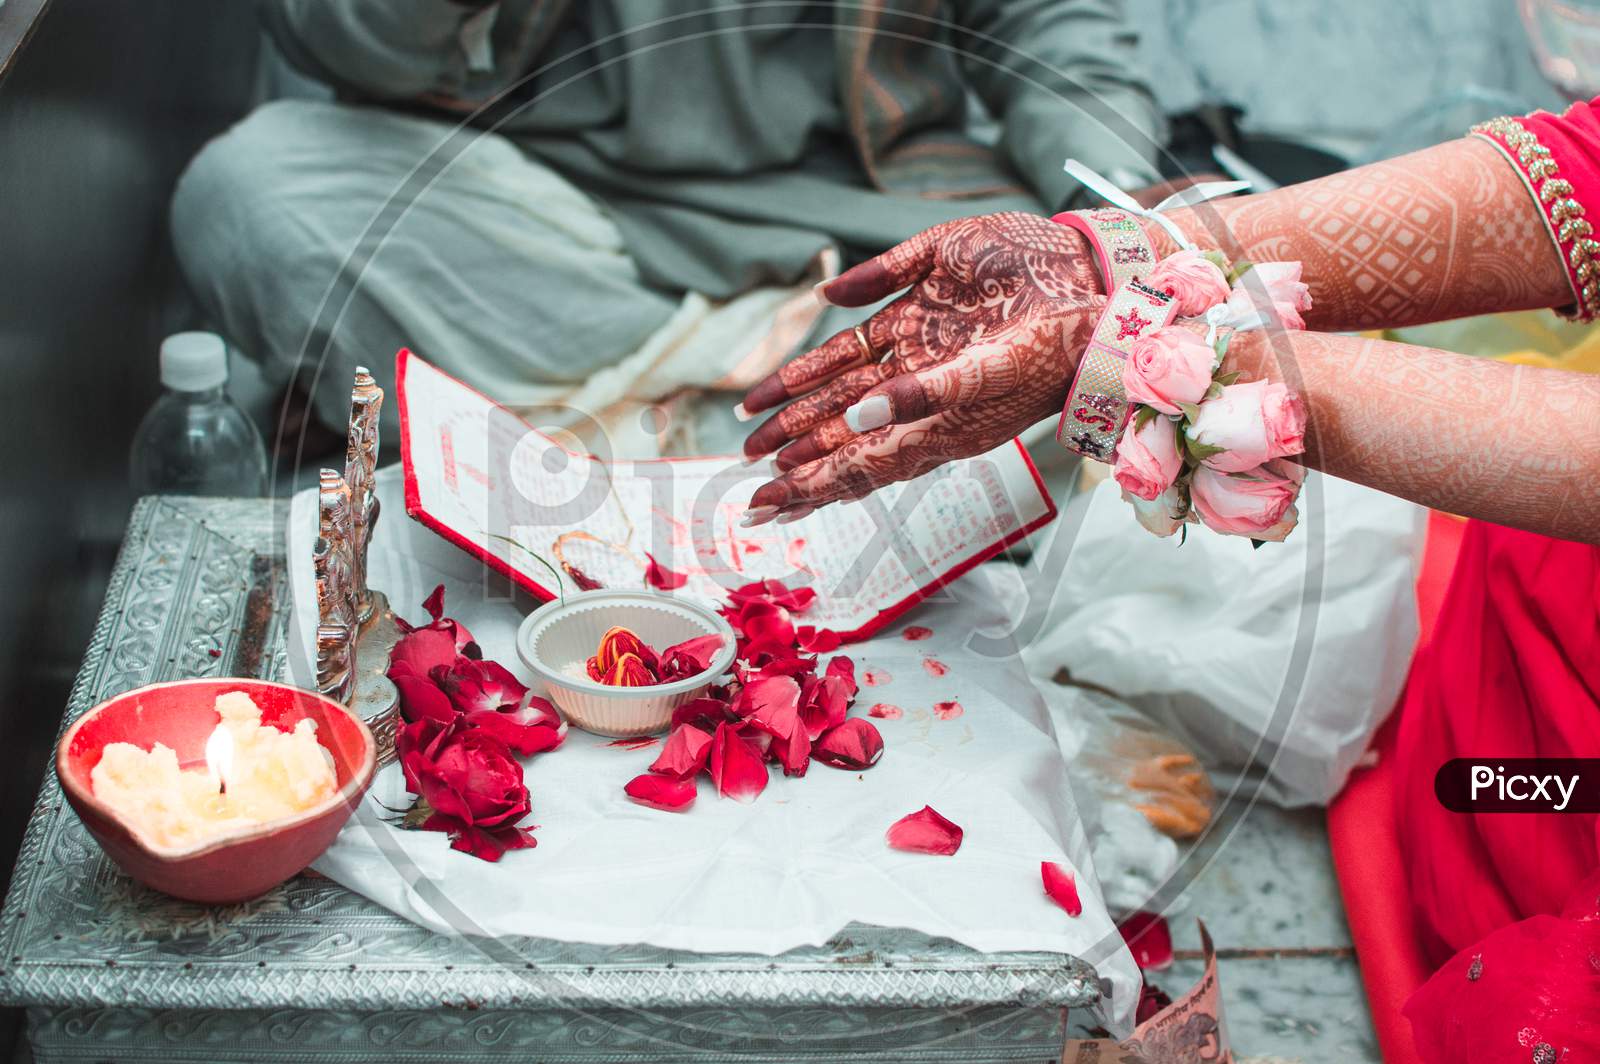 Hands of Indian Bride